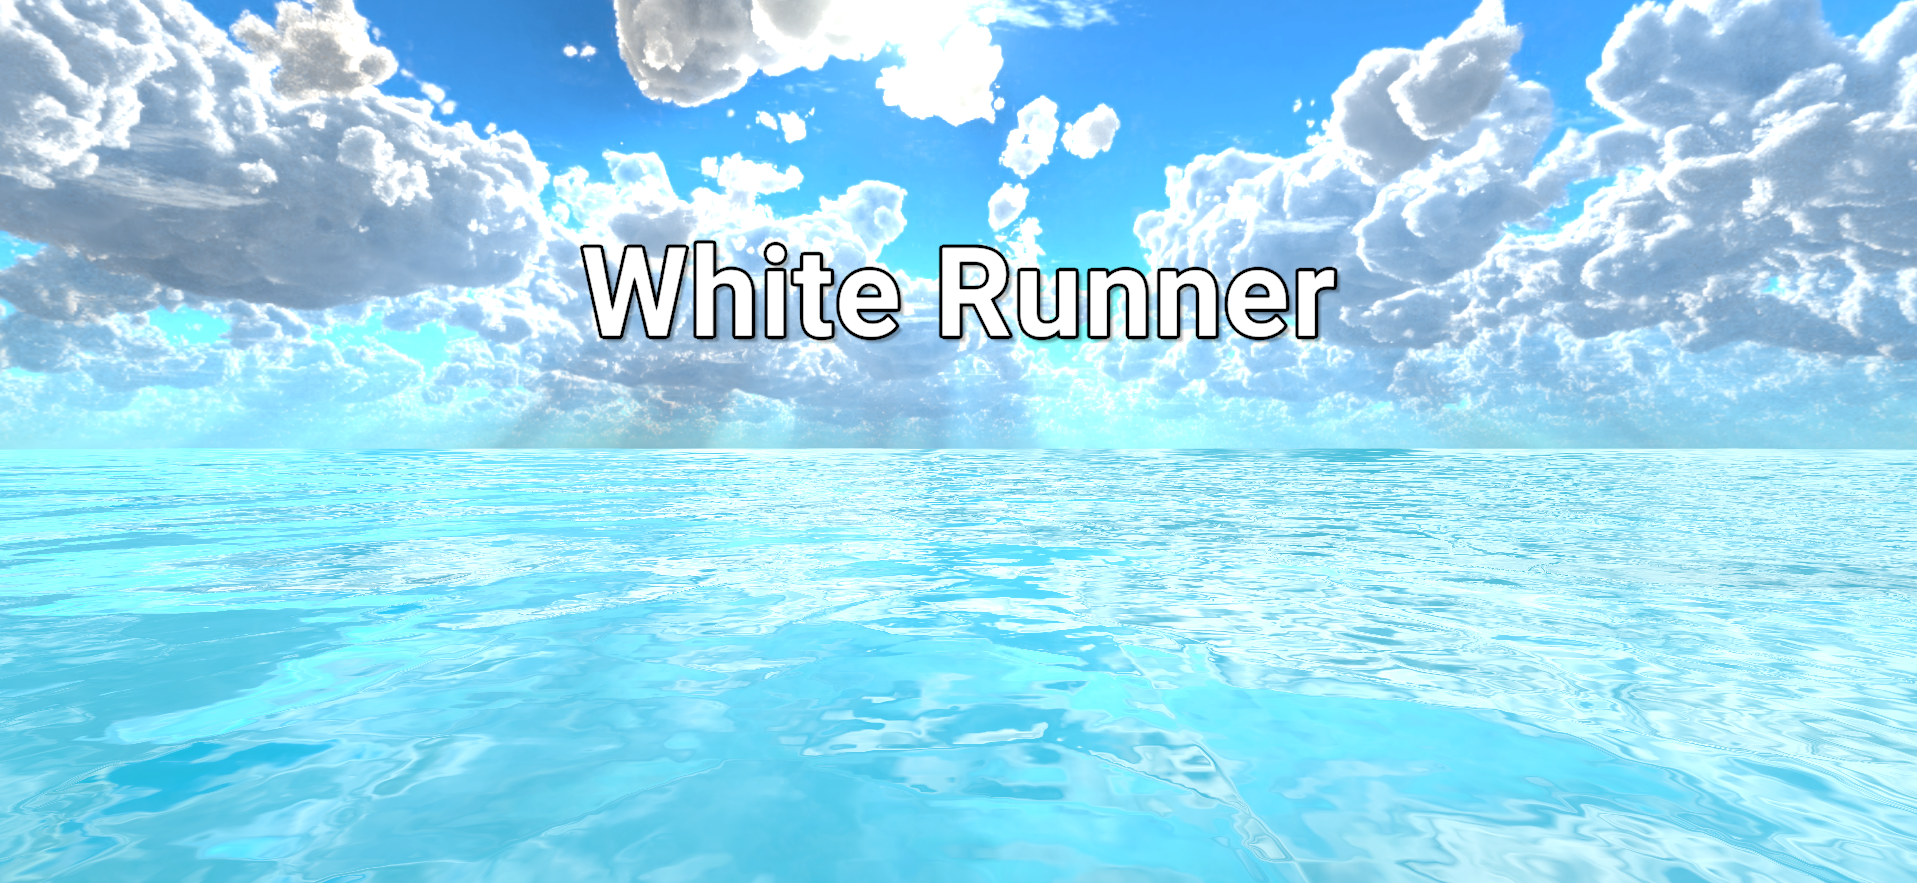 White Runner